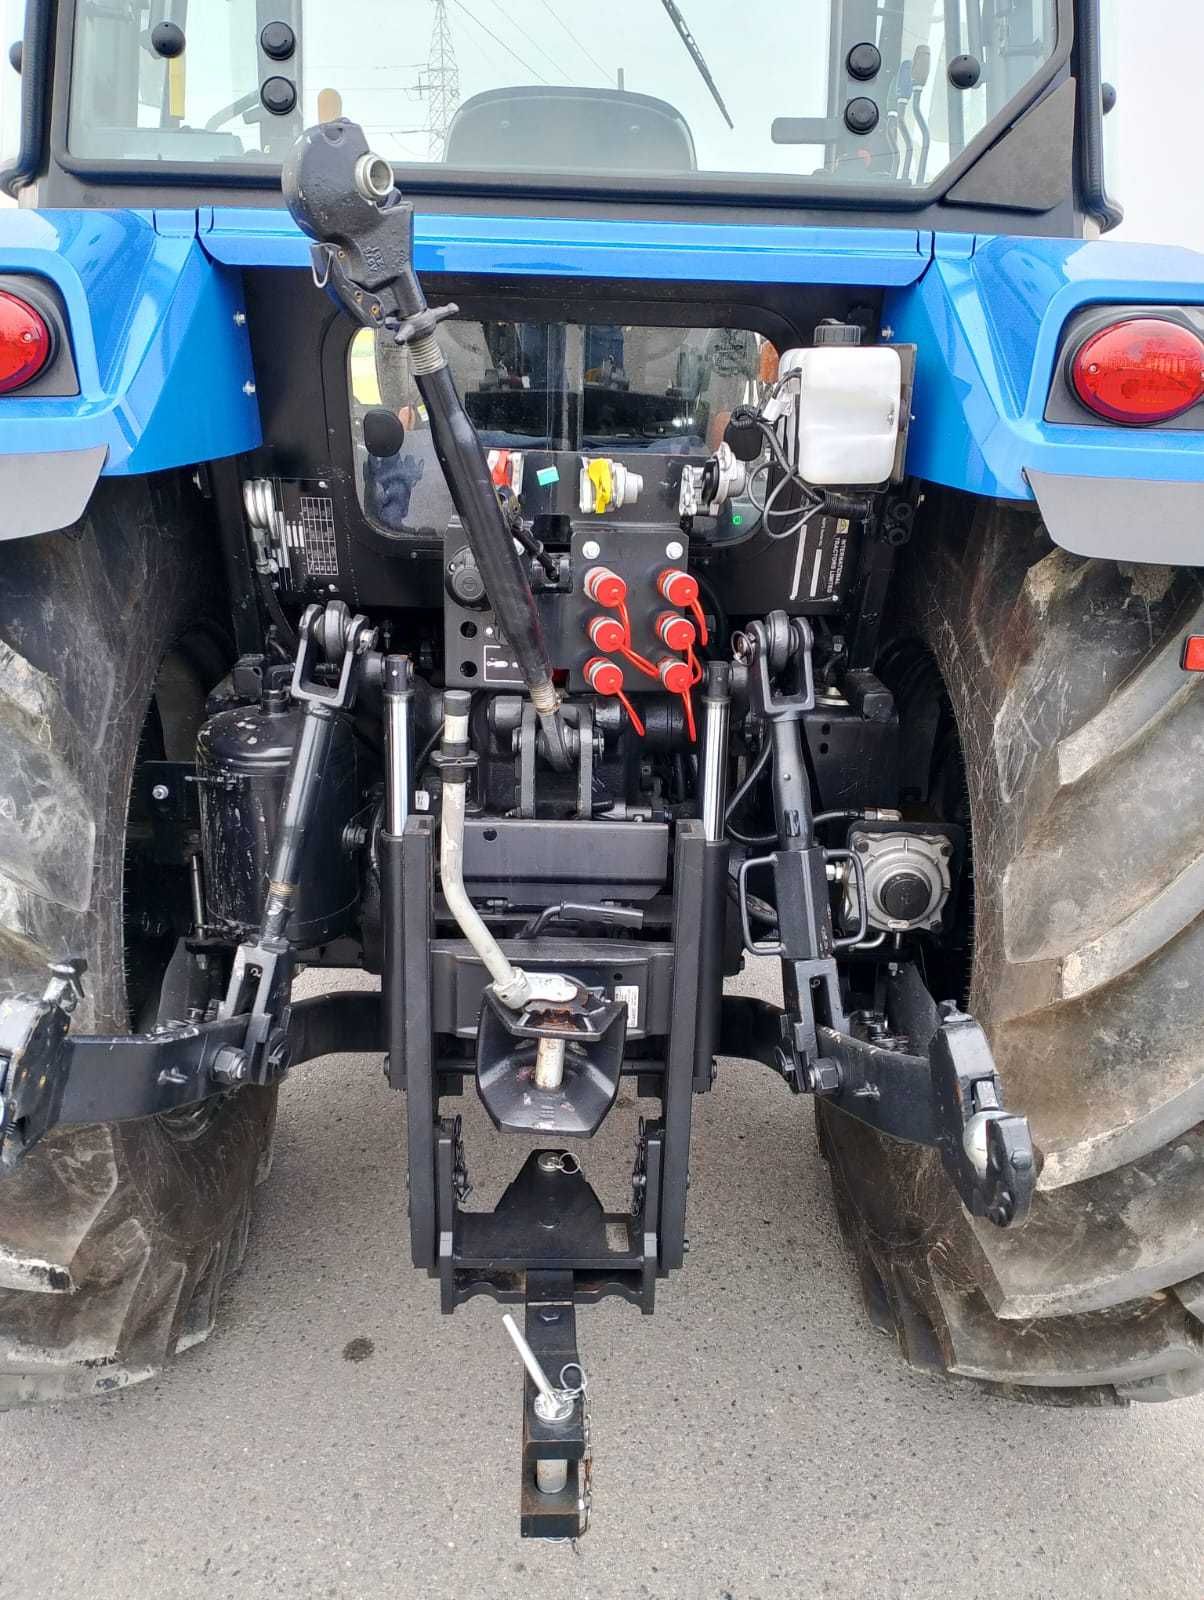 Ciągnik rolniczy Solis S90, traktor 90, od ręki, klimatyzacja, rewers